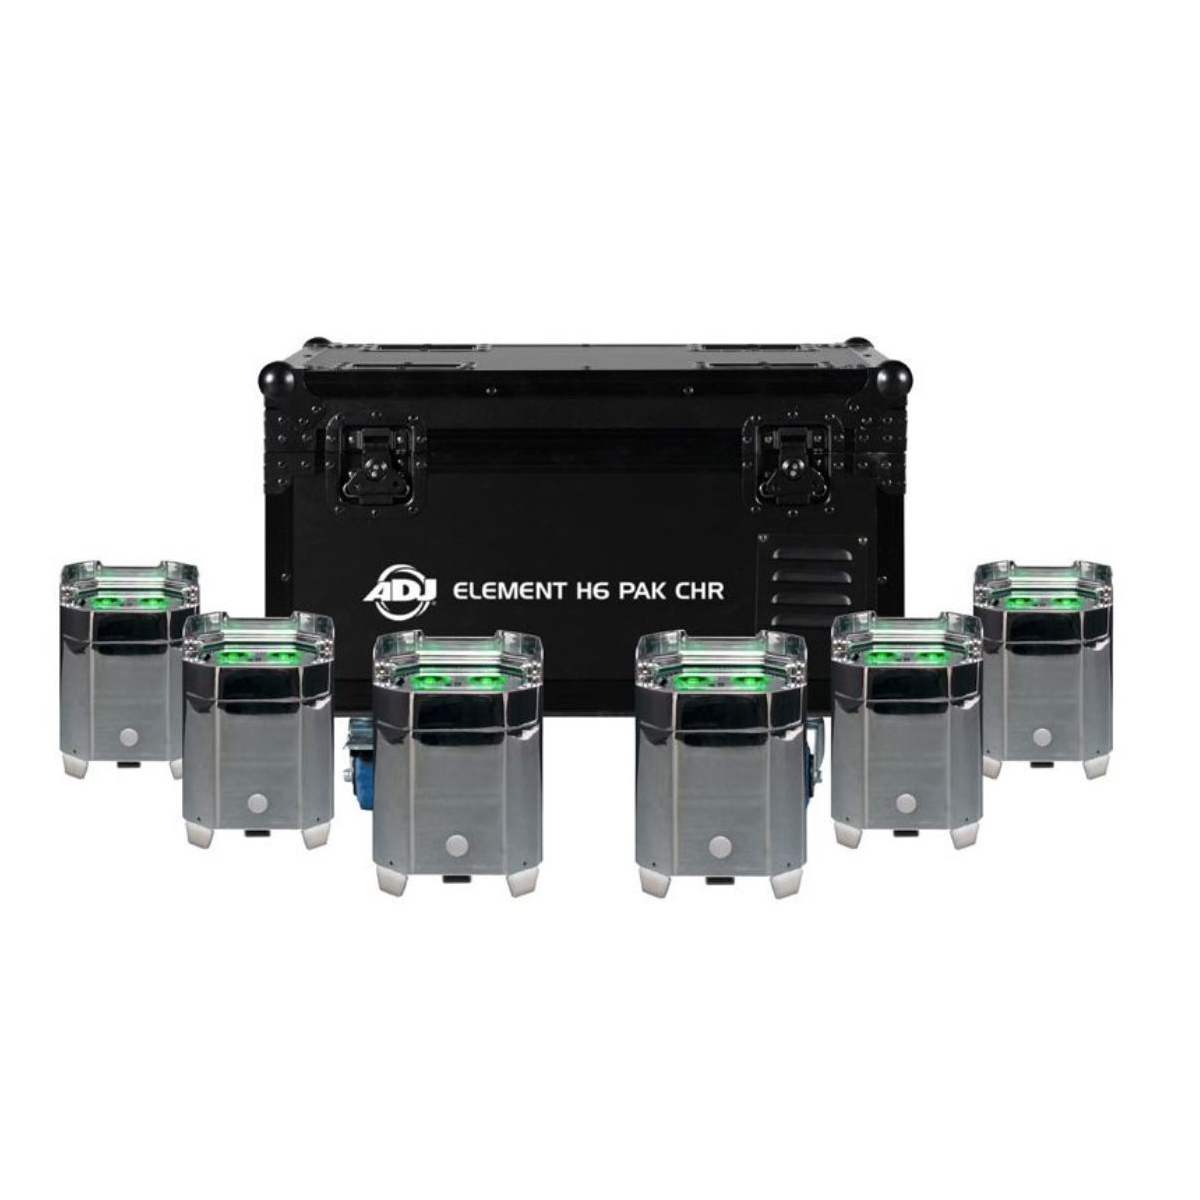 Projecteurs sur batteries - ADJ - ELEMENT H6 PAK CHR